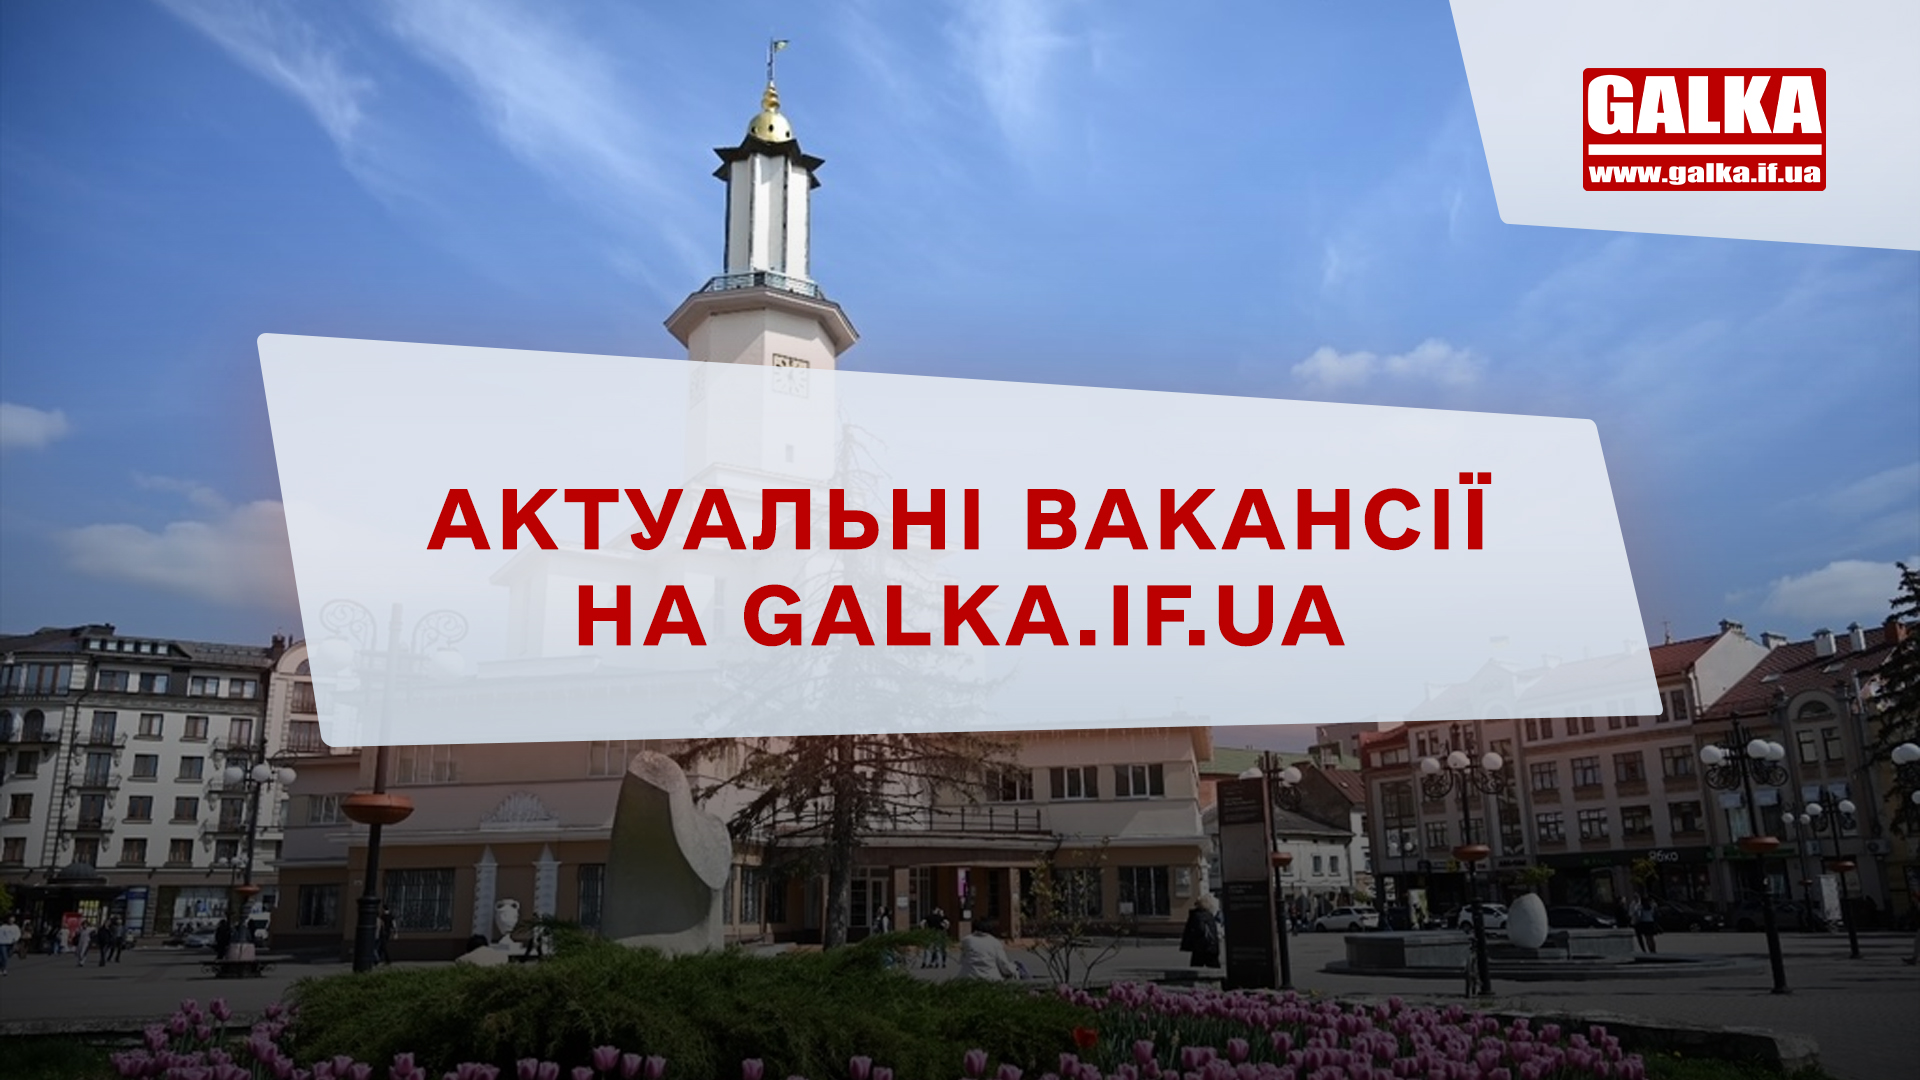 Нова рубрика на Галці: Робота у Франківську з актуальними вакансіями від місцевого бізнесу